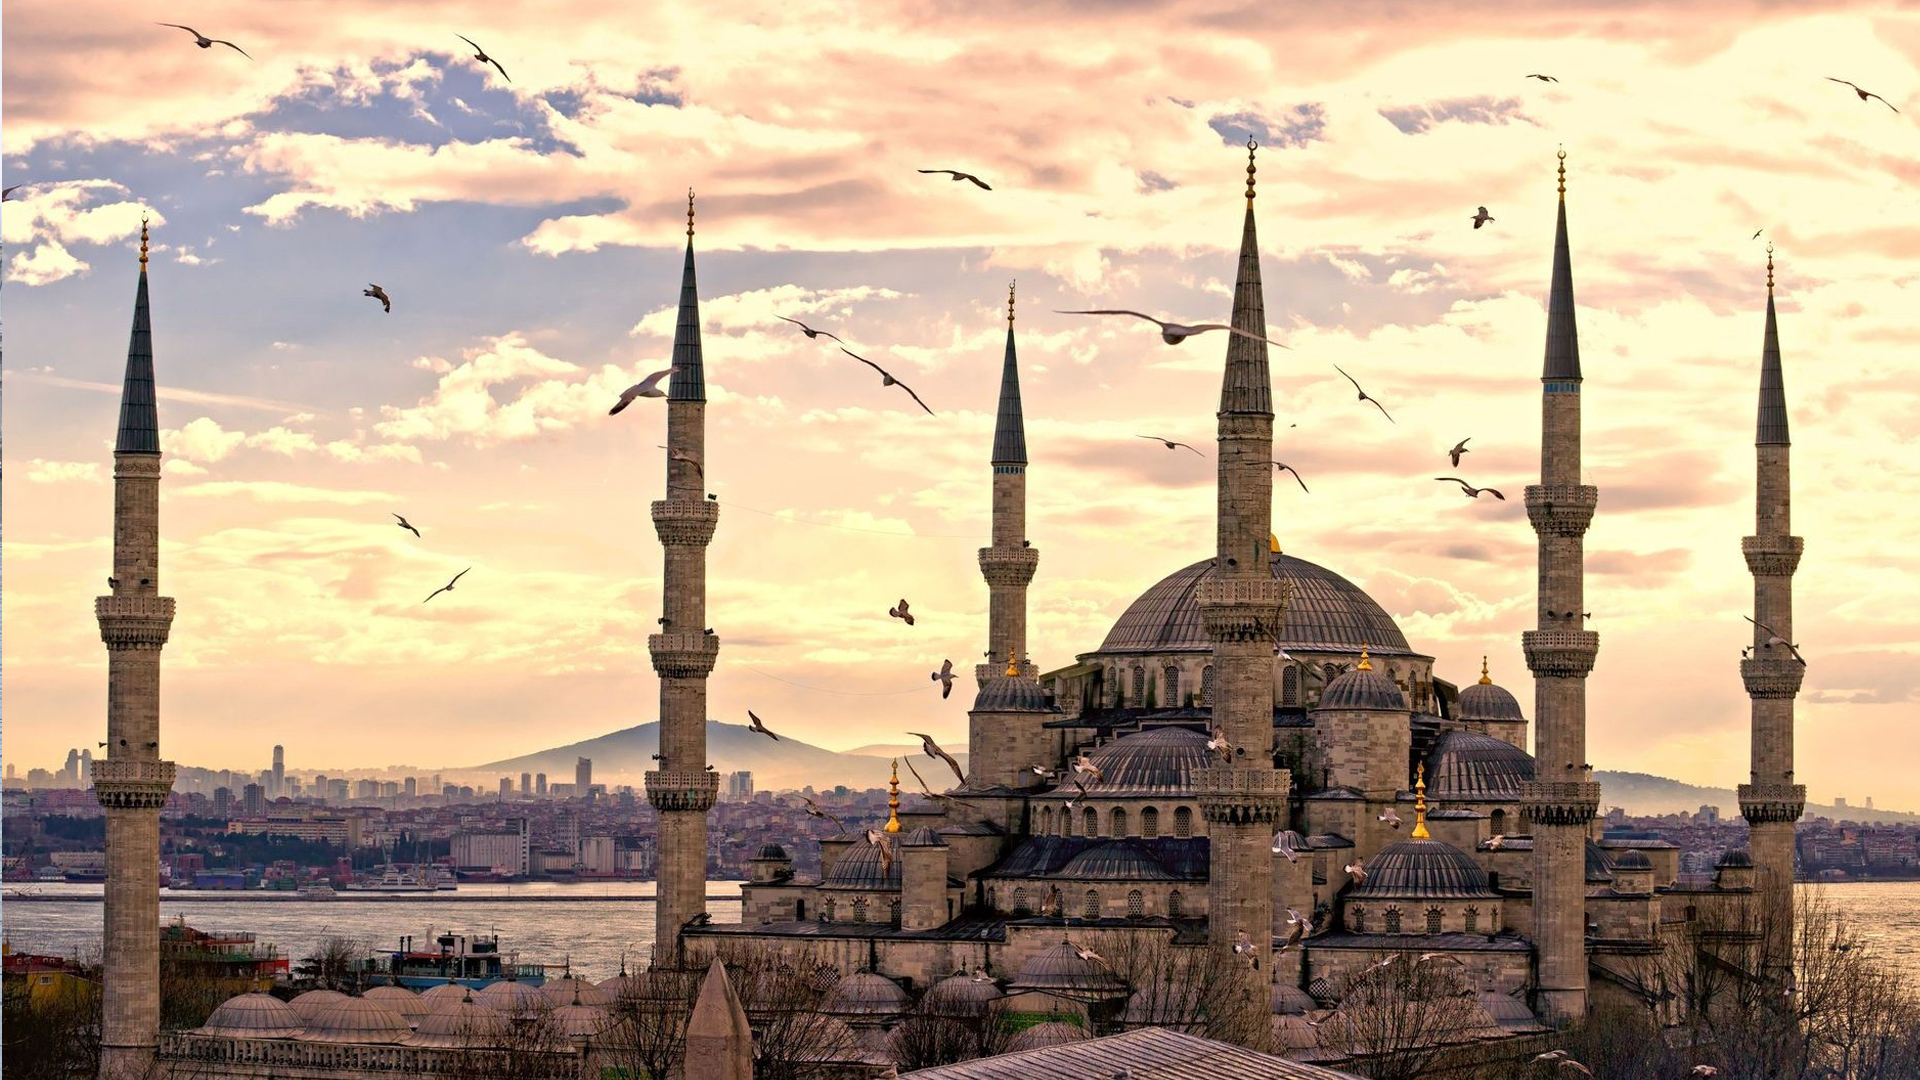 Թուրքիայի չափահաս բնակչության 2 տոկոսը տիրում է երկրի ունեցվածքի 77.7 տոկոսին